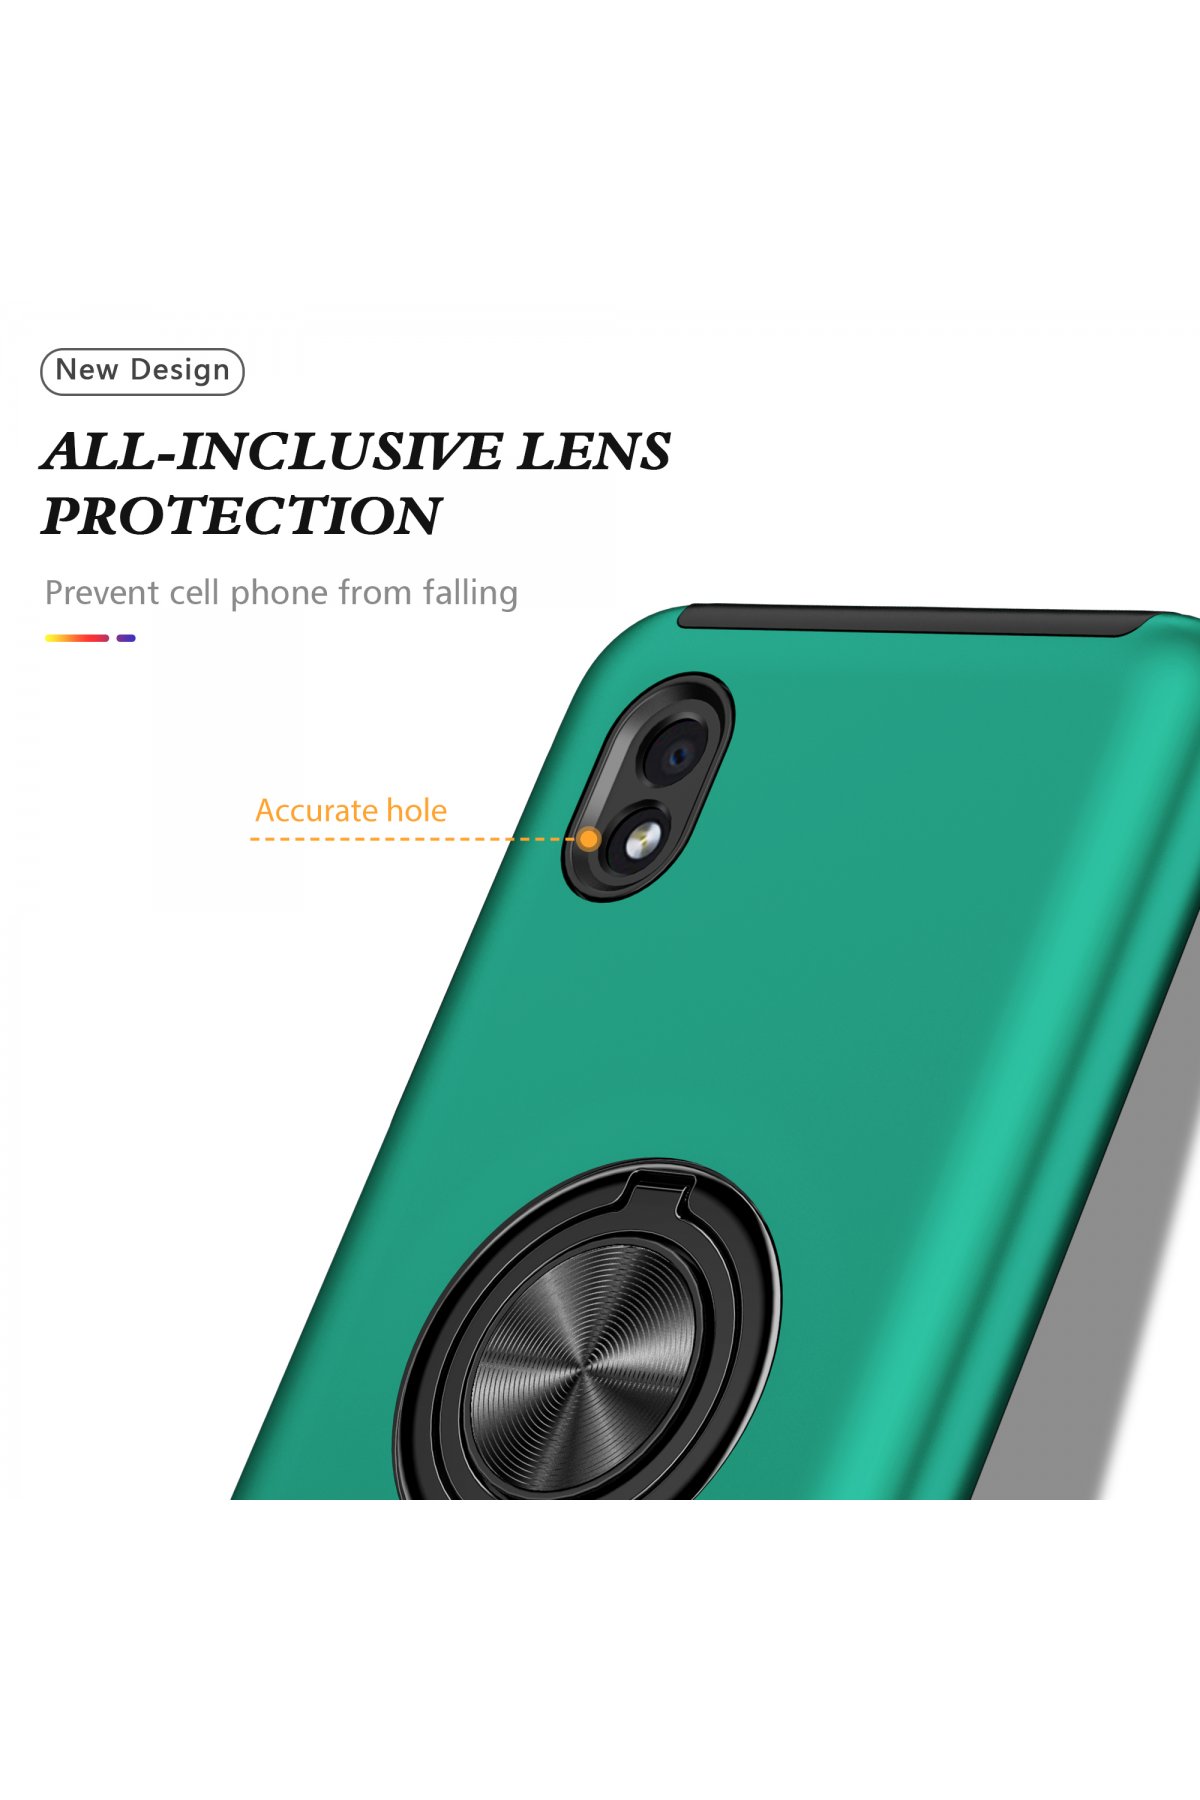 Newface Samsung Galaxy A01 Core Kılıf Color Lens Silikon - Yeşil